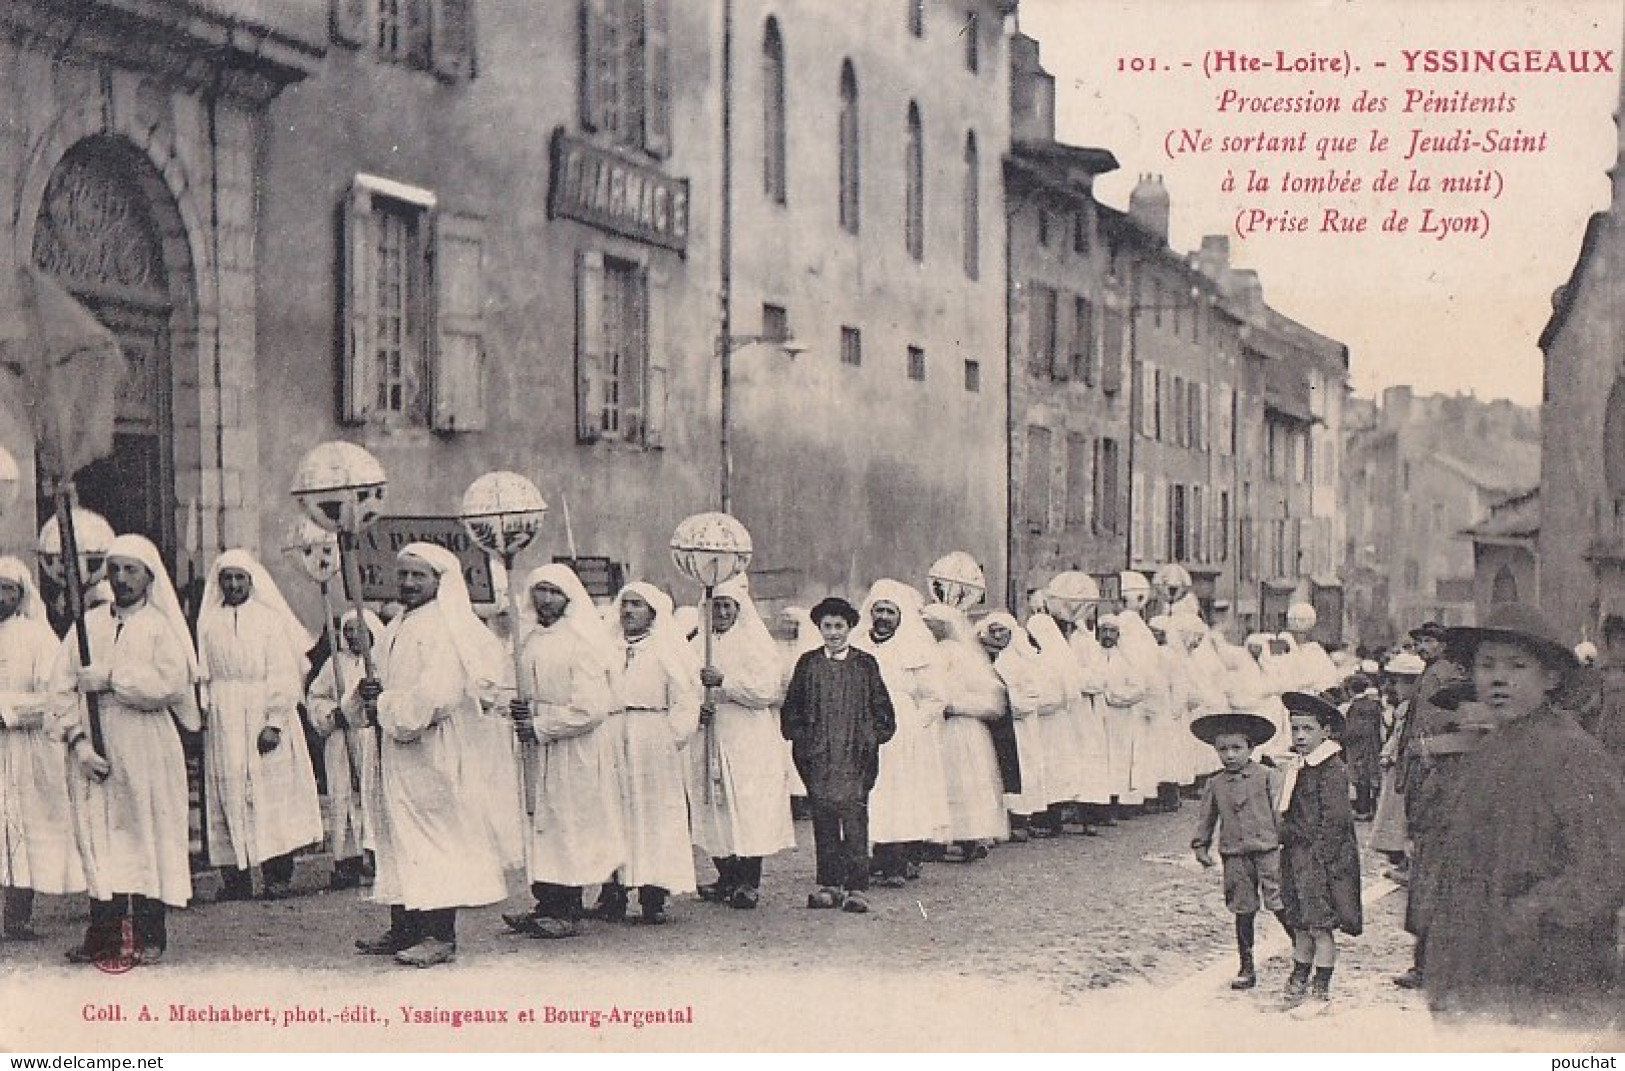 43) YSSINGEAUX  -  PROCESSION DES PENITENTS - PRISE RUE DE LYON  - EN  1910 - ( 2 SCANS )   - Yssingeaux